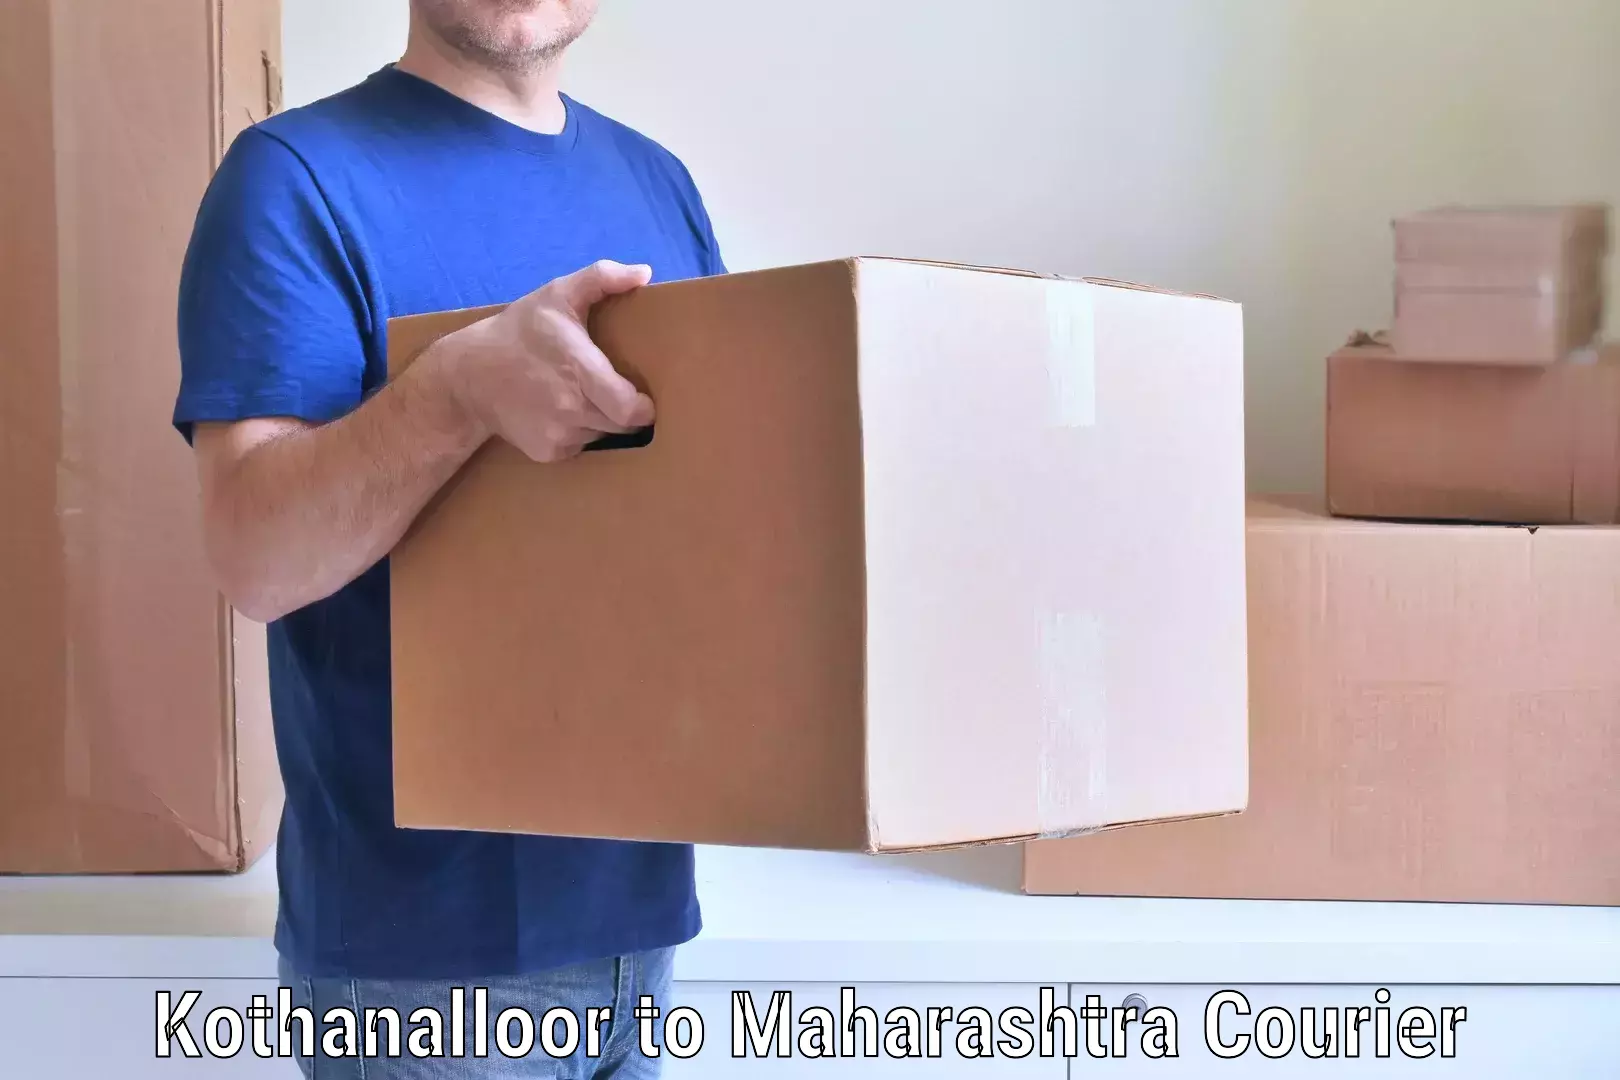 Professional movers Kothanalloor to Maharashtra